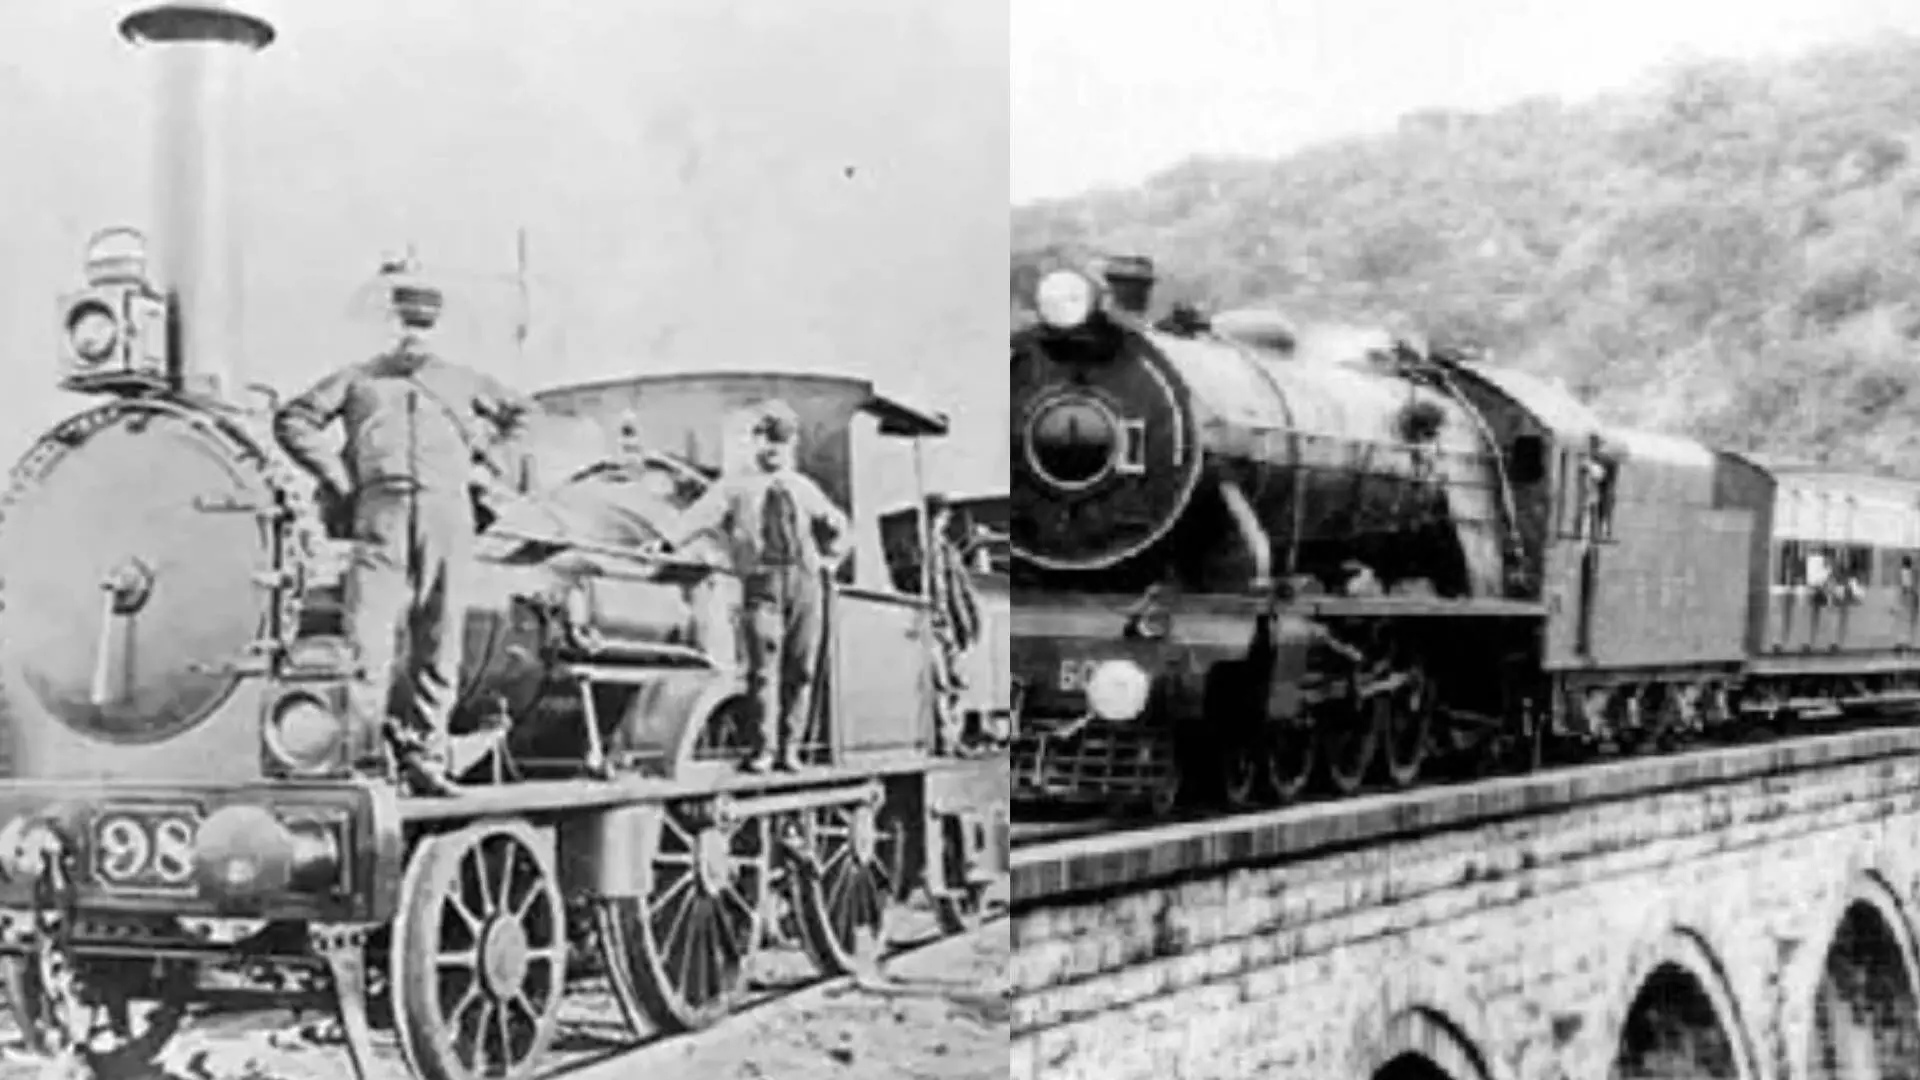 भारतातील पहिल्या ट्रेनचा चालक कोण होता माहितीय का ?